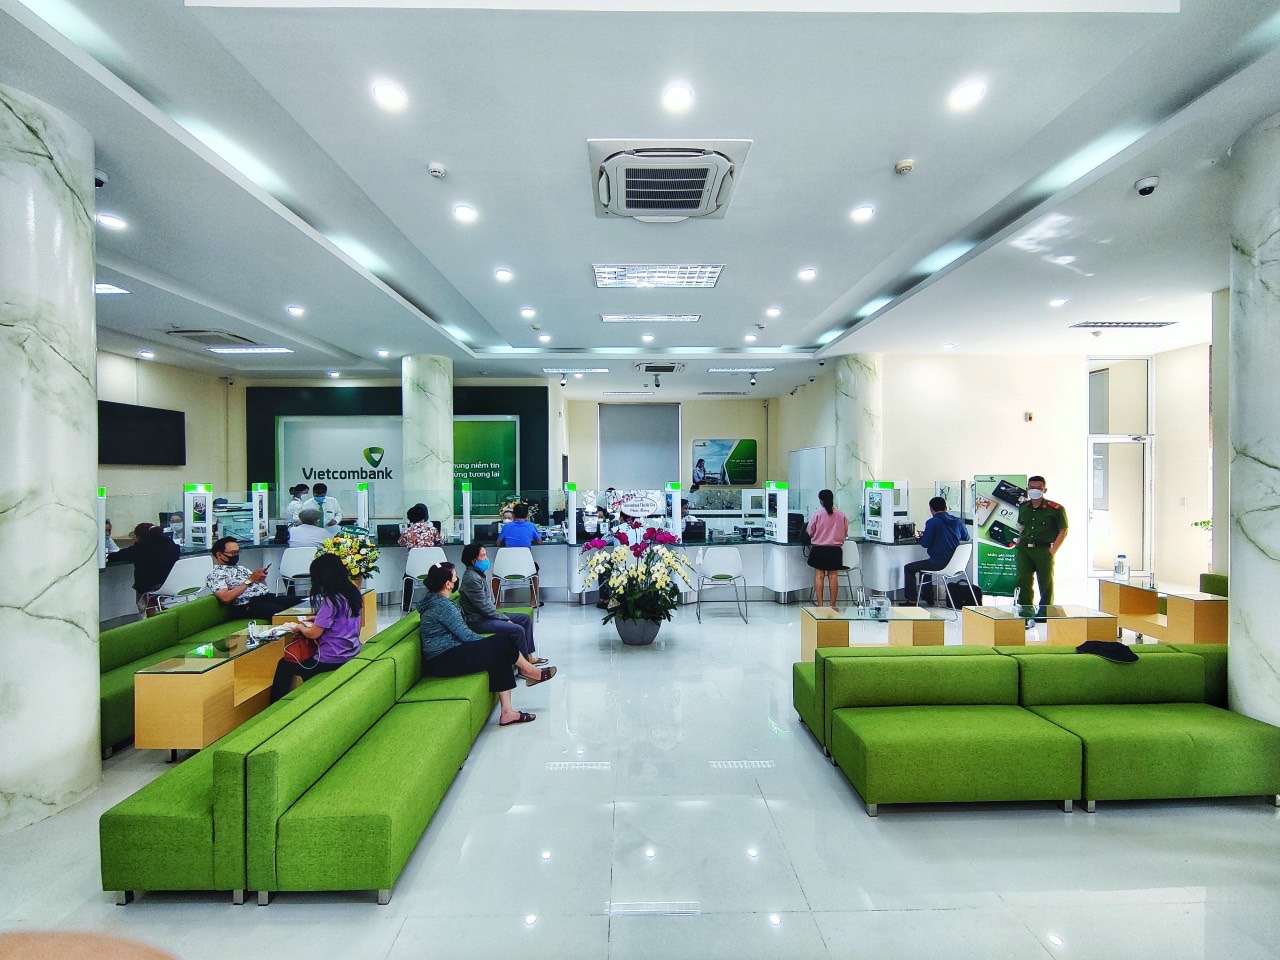 Kinh tế - Vietcombank Nha Trang khánh thành trụ sở hoạt động mới (Hình 3).